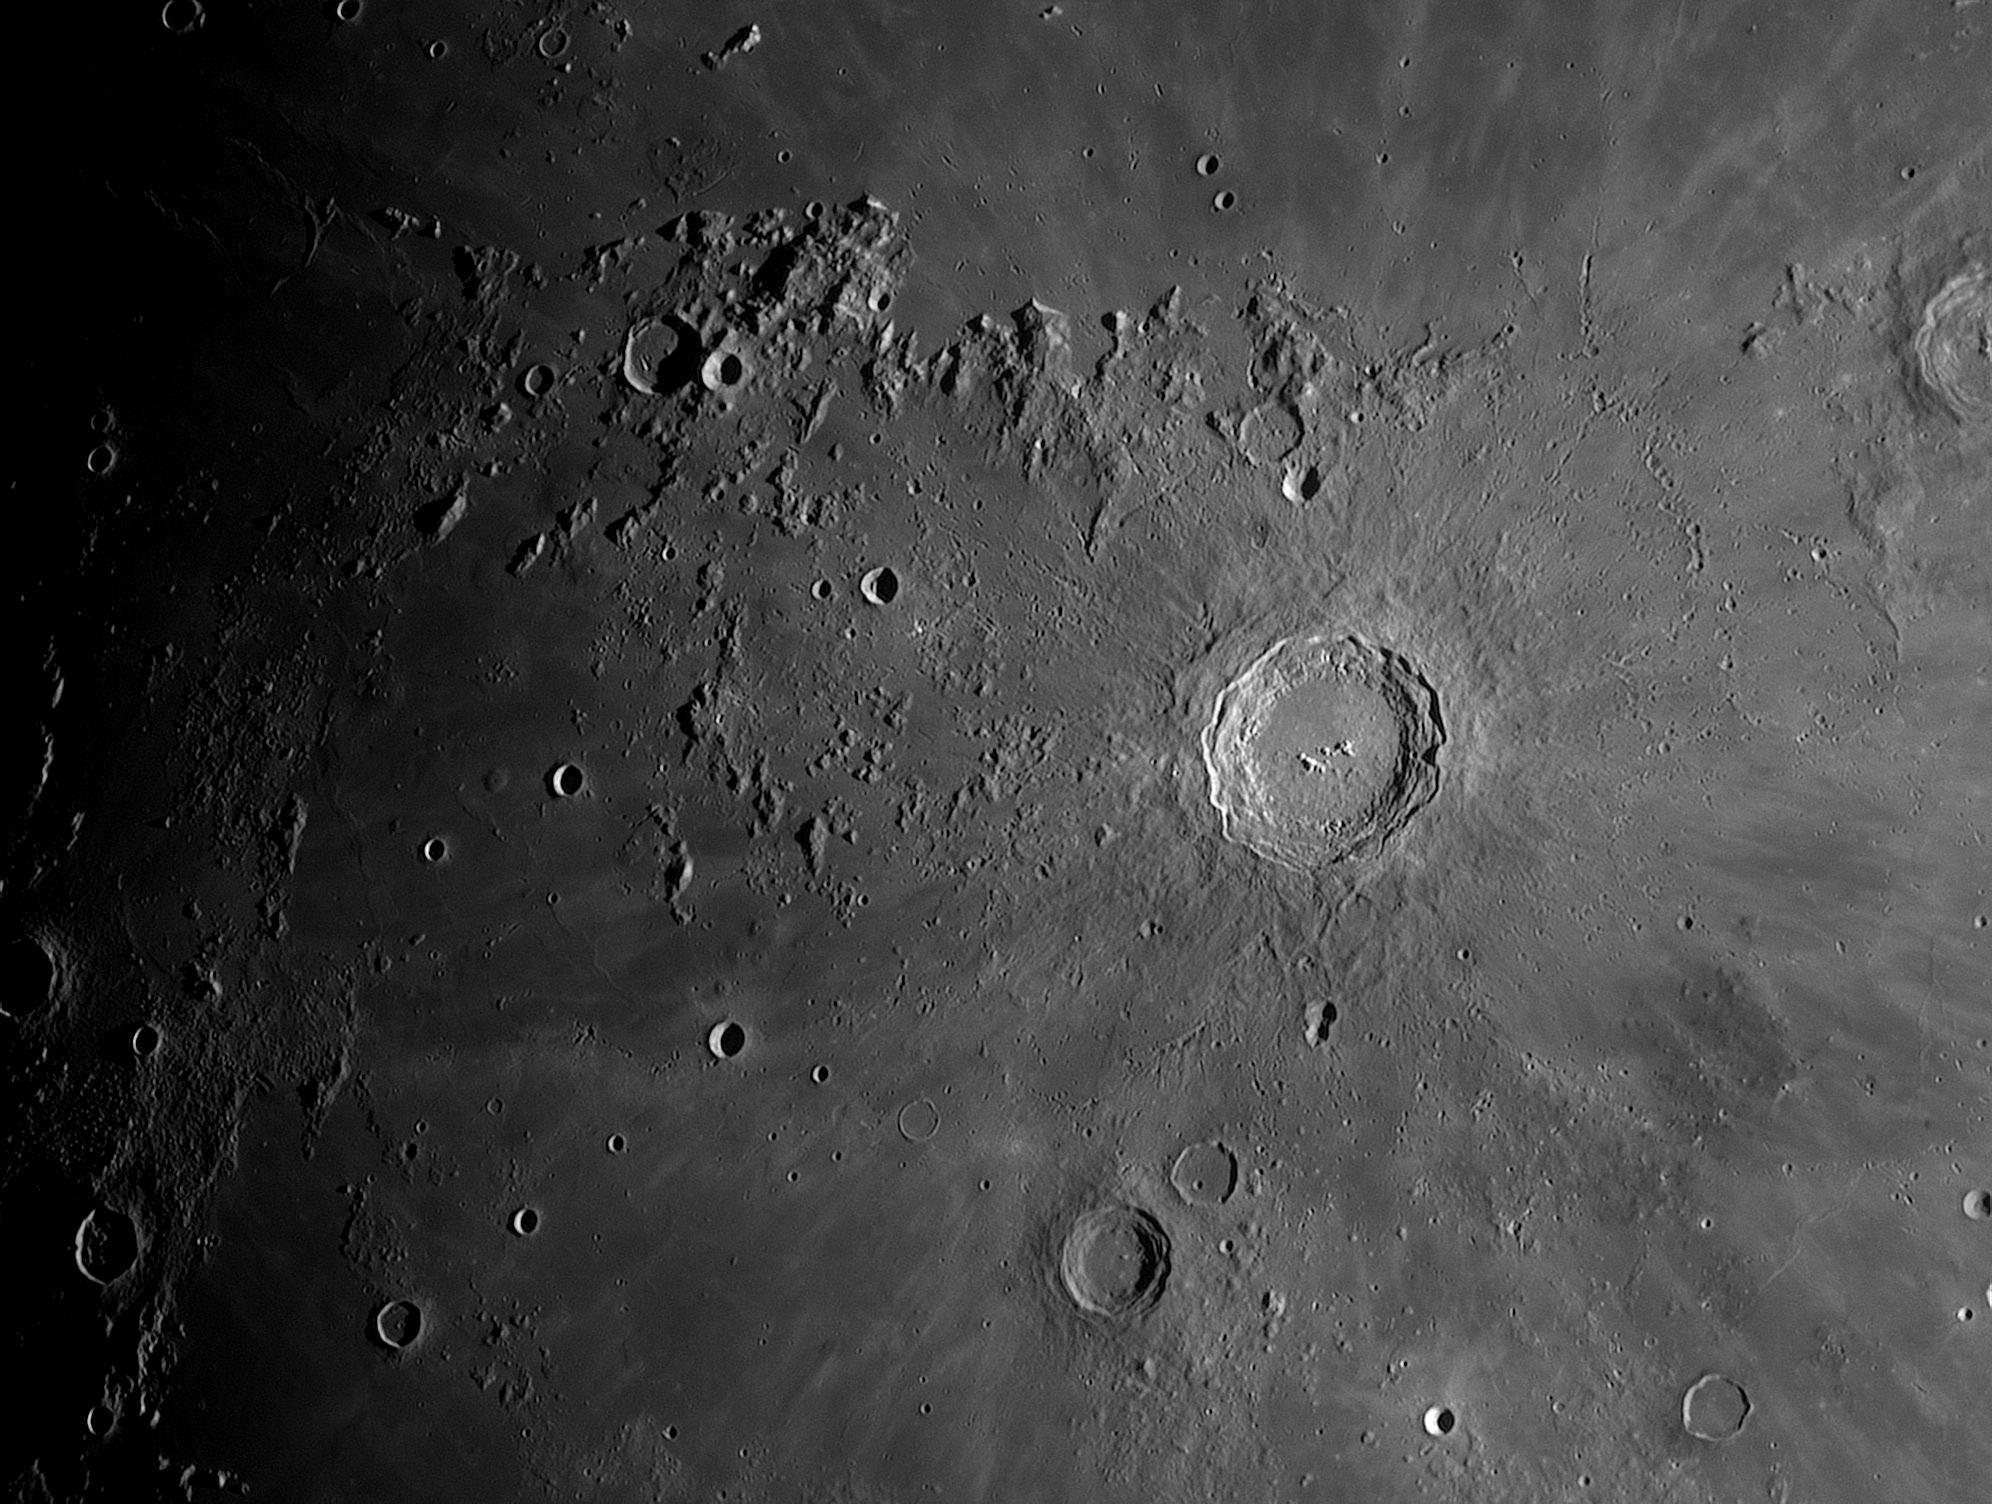 Lune-20210422_Copernic-ba01-AS.jpg.96ed35a3dc813d59f7bb6f13748e58ce.jpg